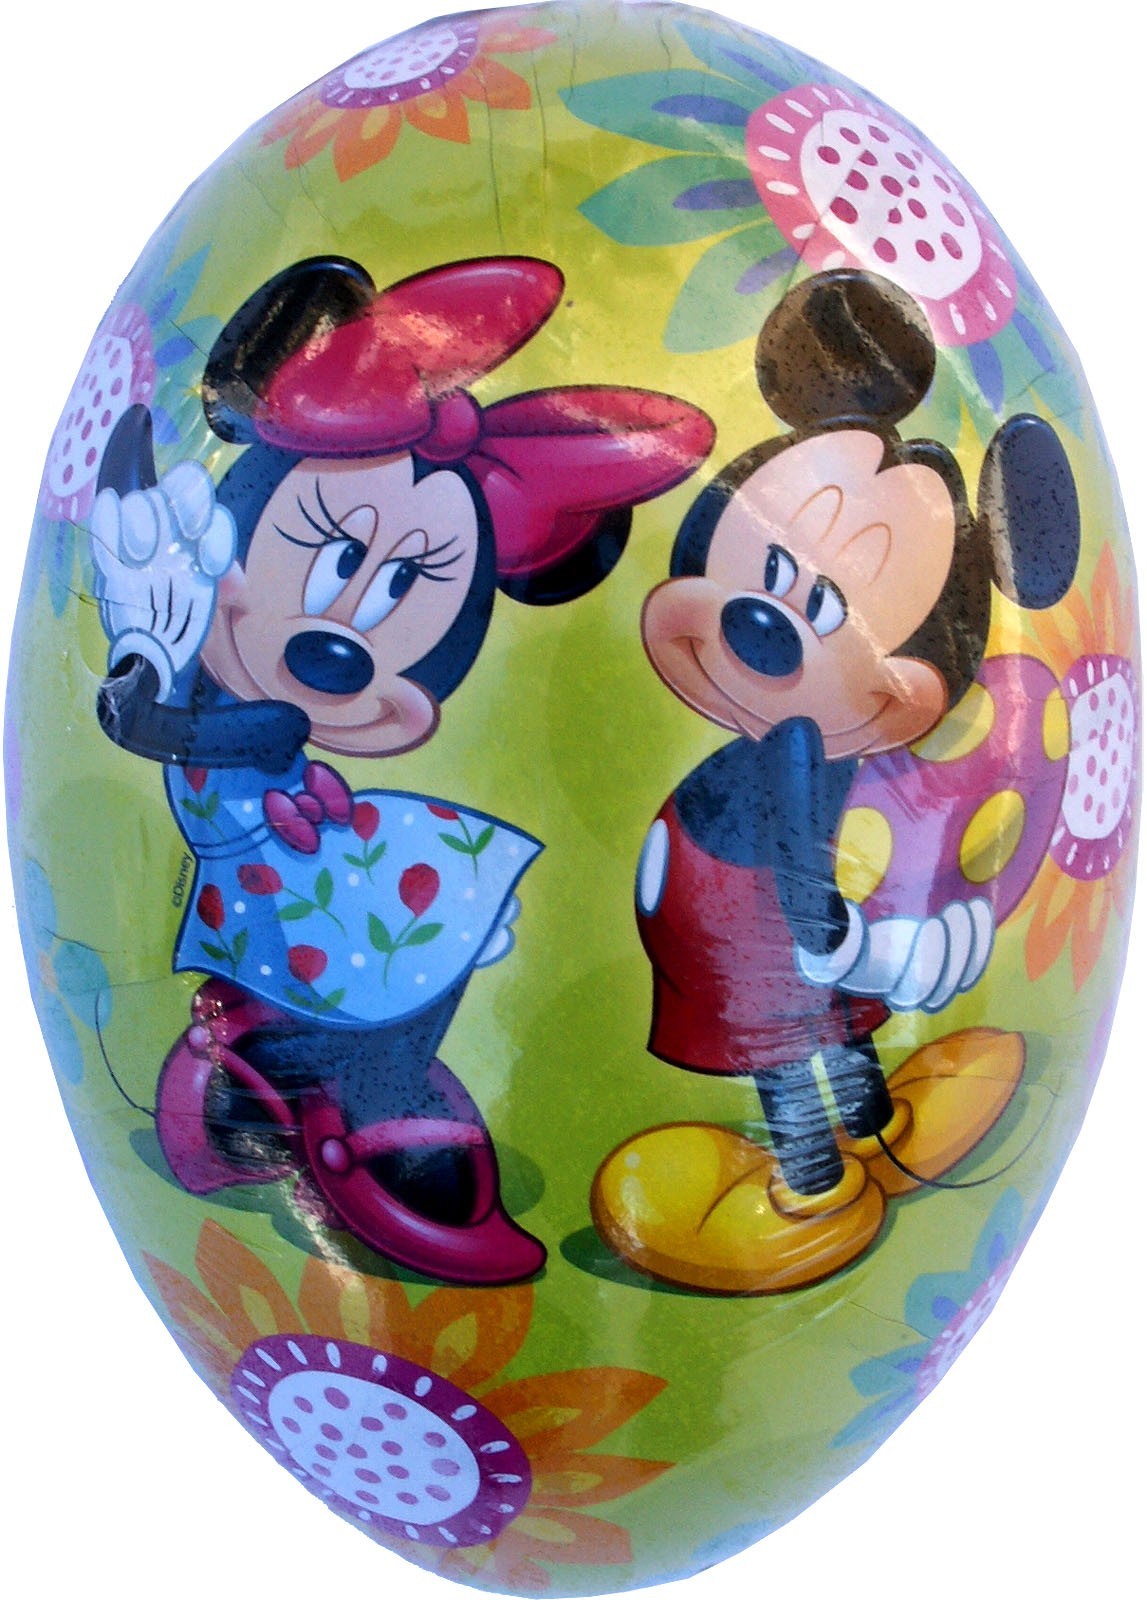 Nestler Osterei Disney 2017 - Mickey und Minnie, 18 cm